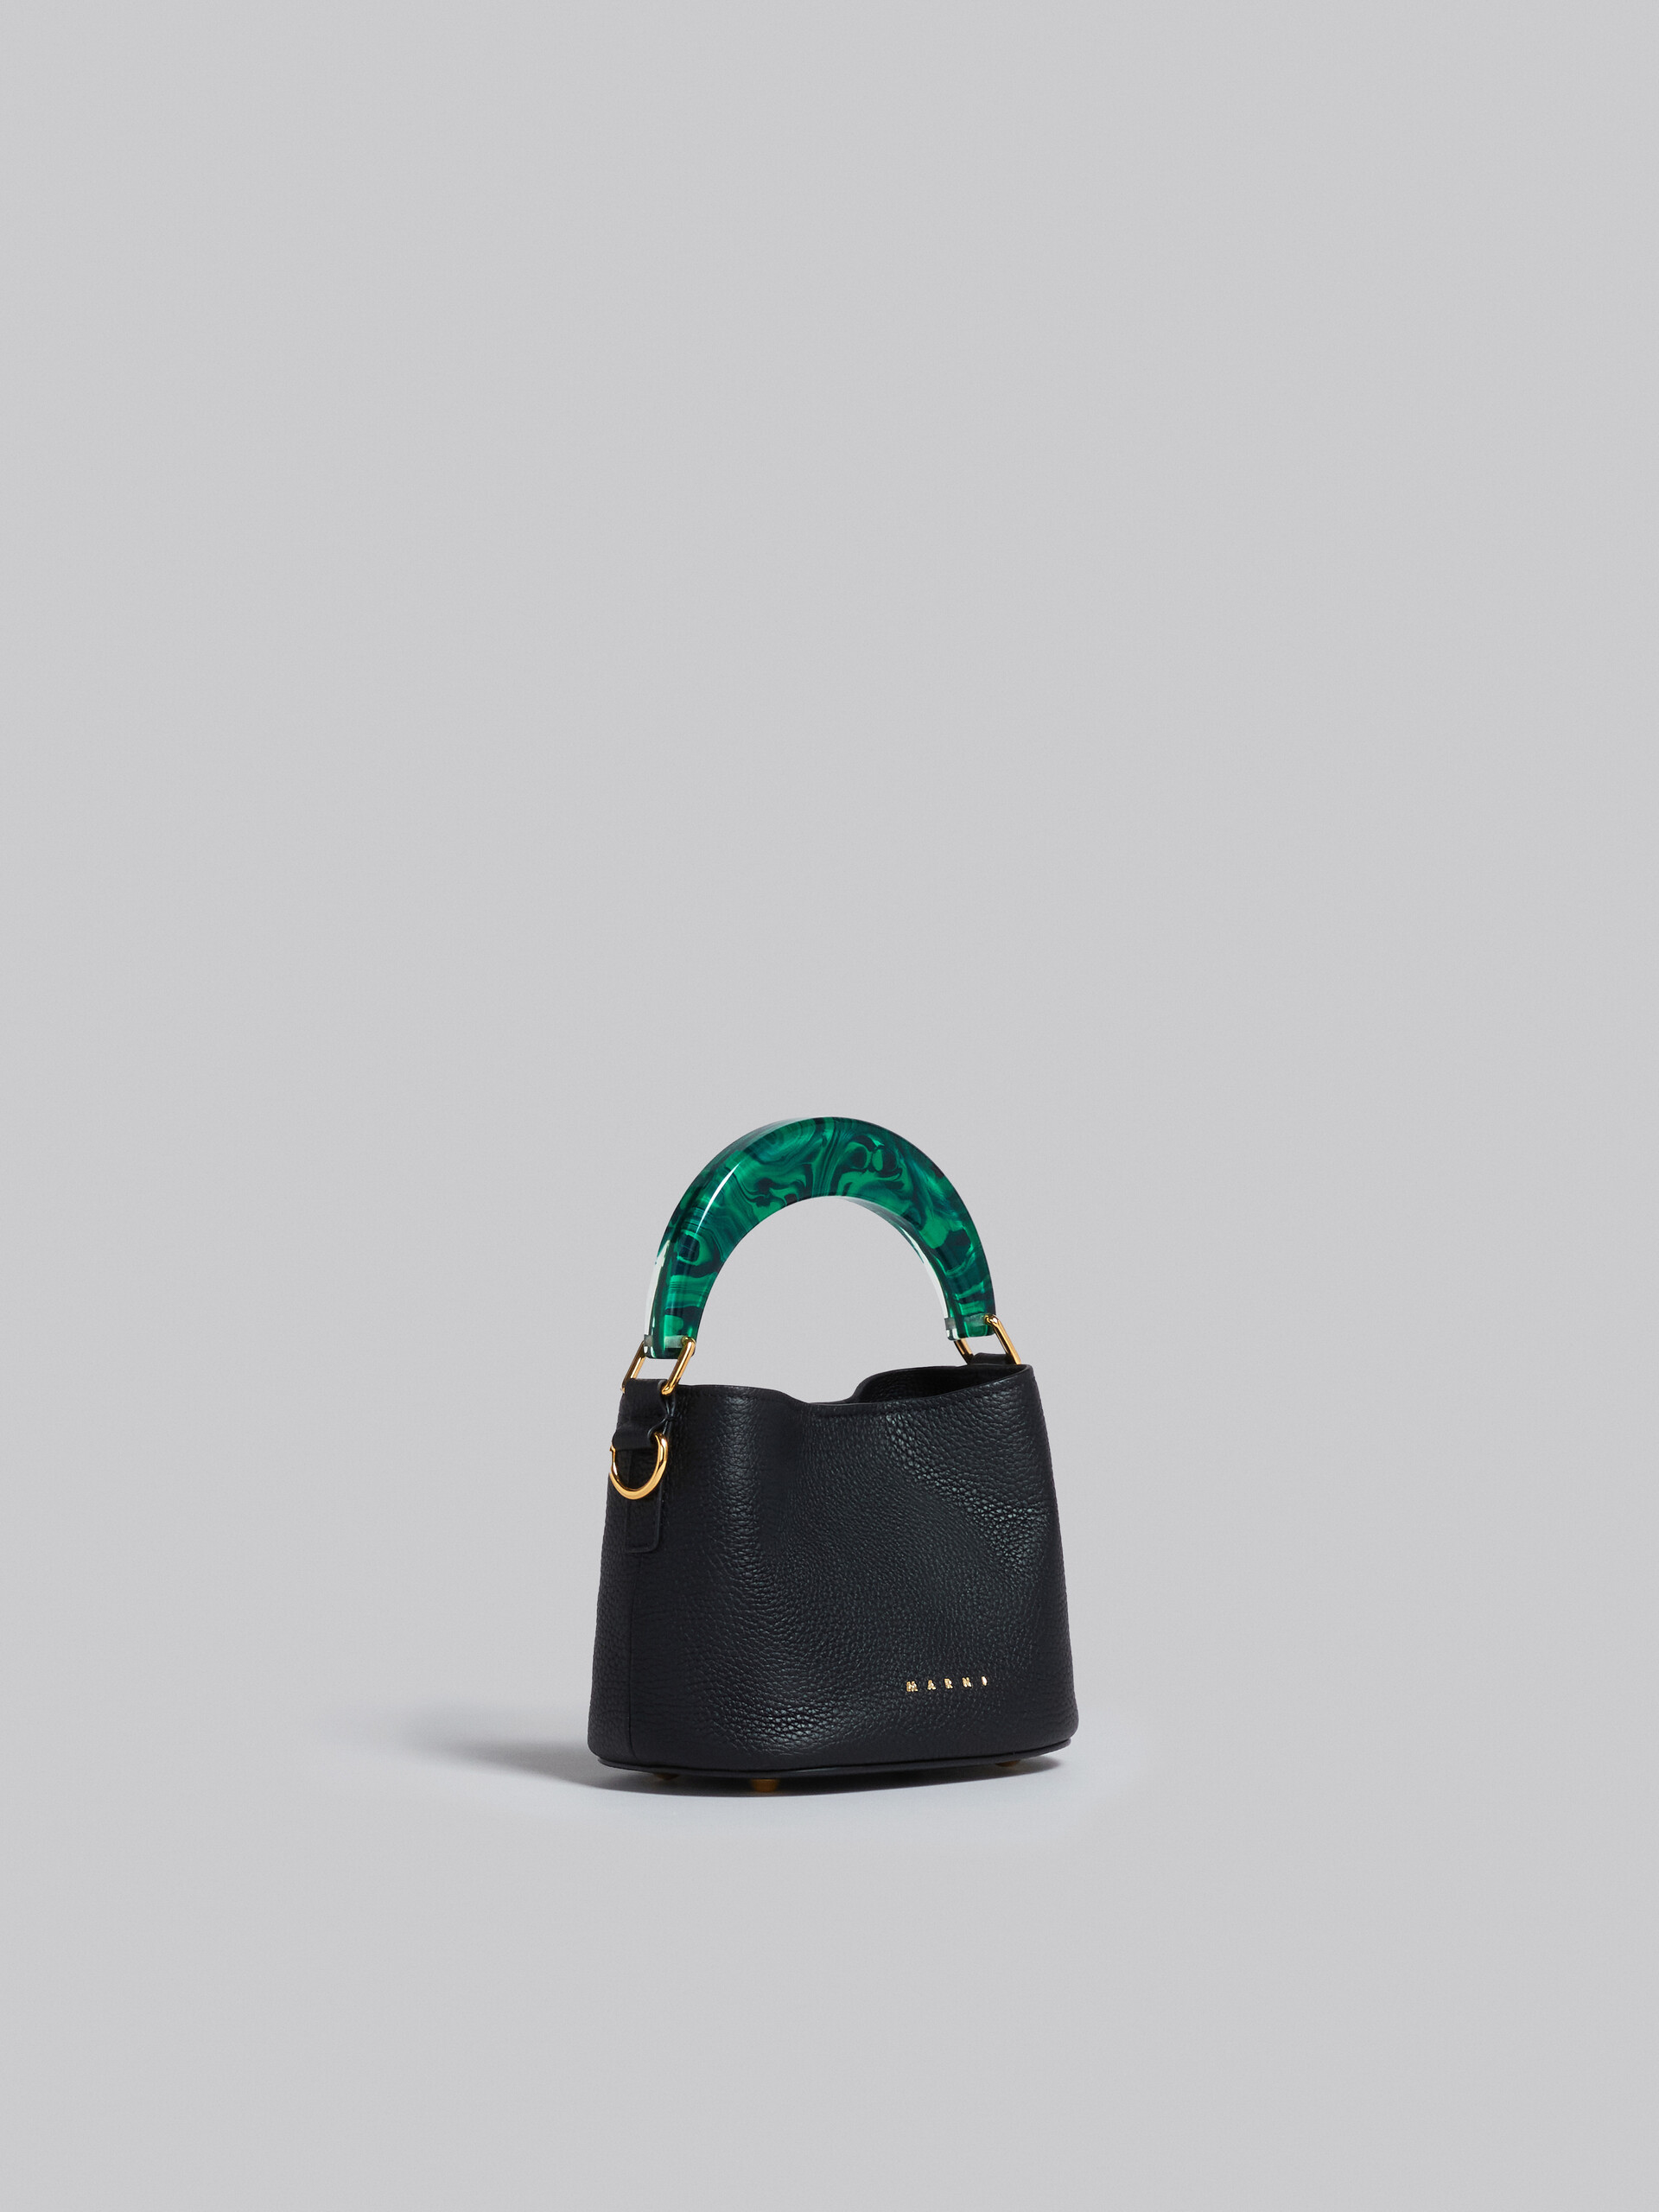 Venice Mini Bucket Bag in black leather - Shoulder Bag - Image 5